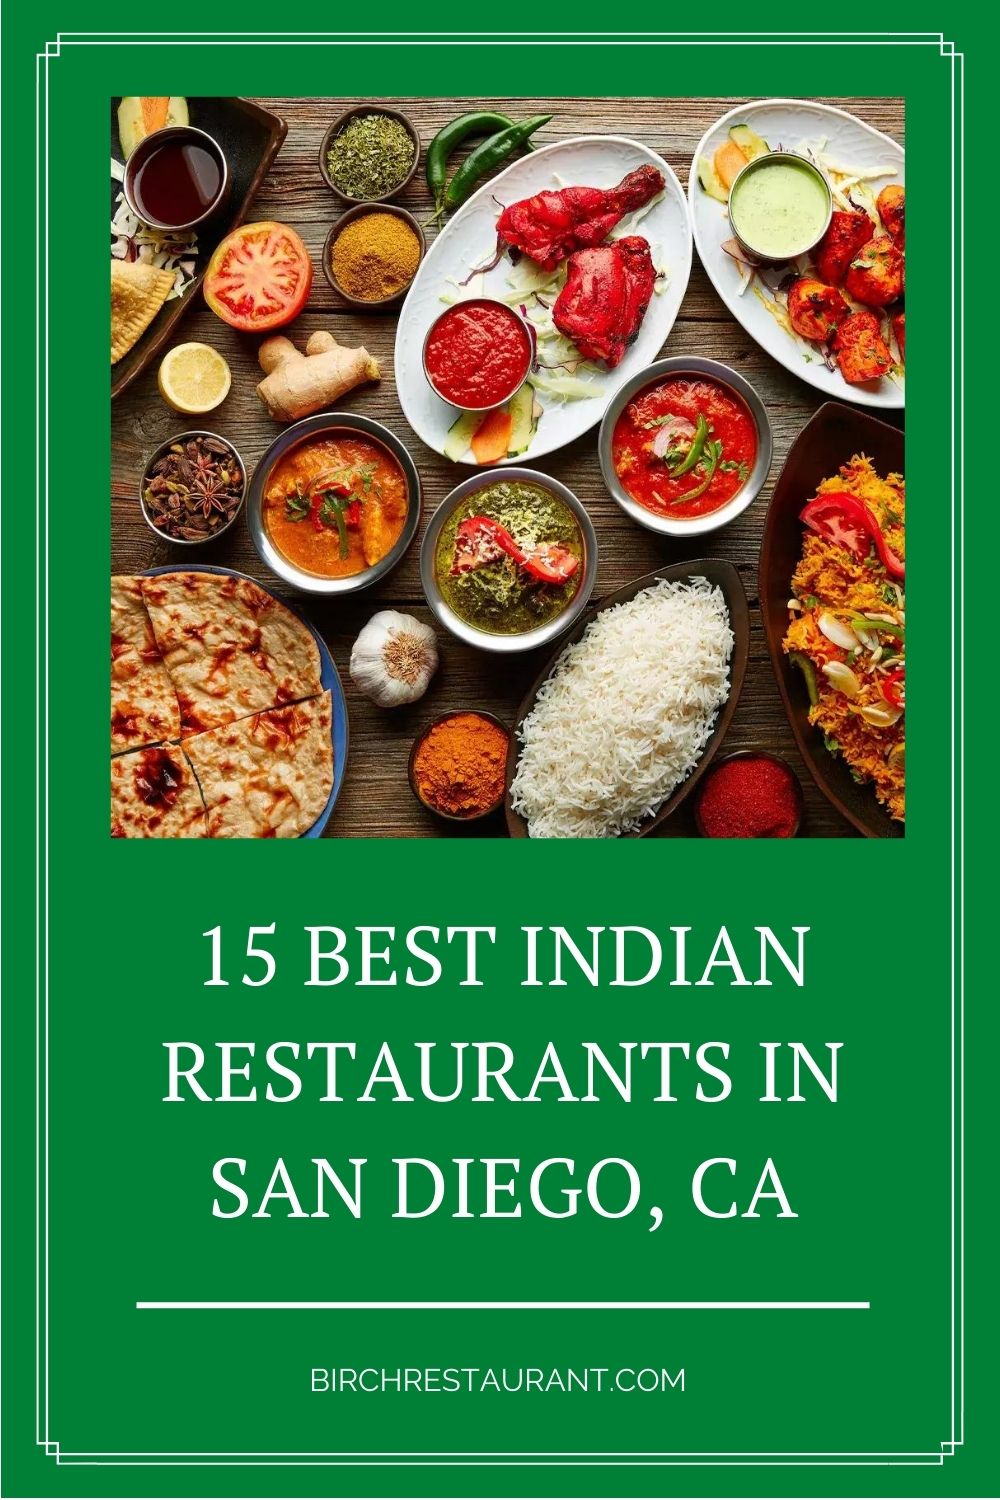 Best Indian Restaurants in San Diego